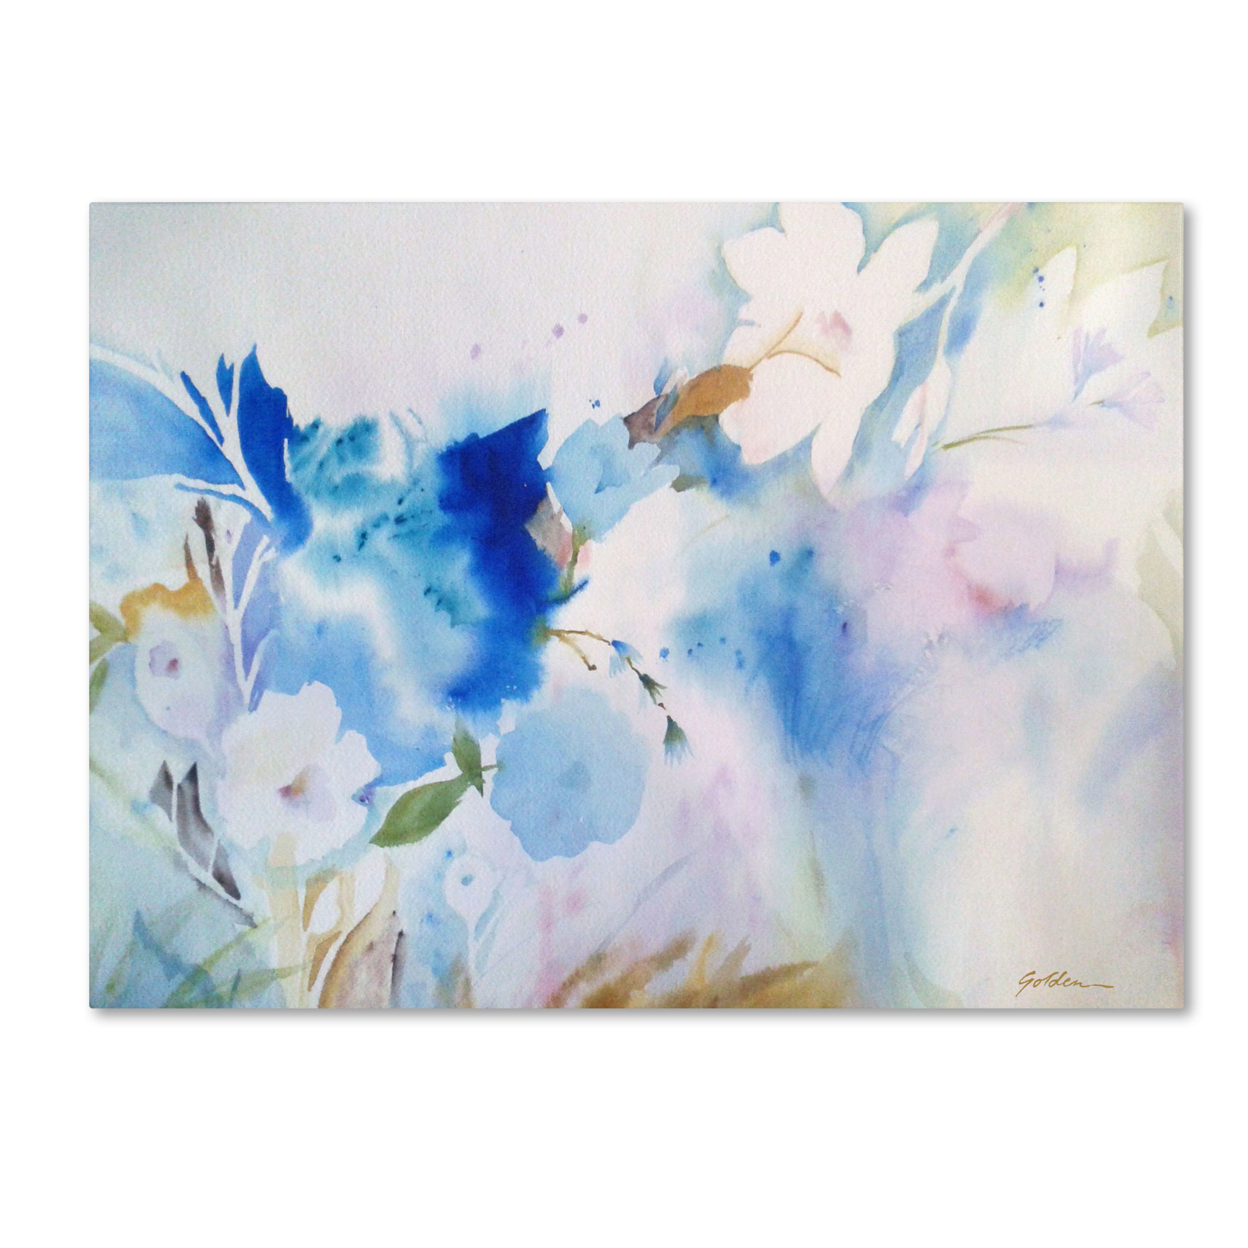 Sheila Golden 'Blue Whispers' Canvas Art 18 X 24